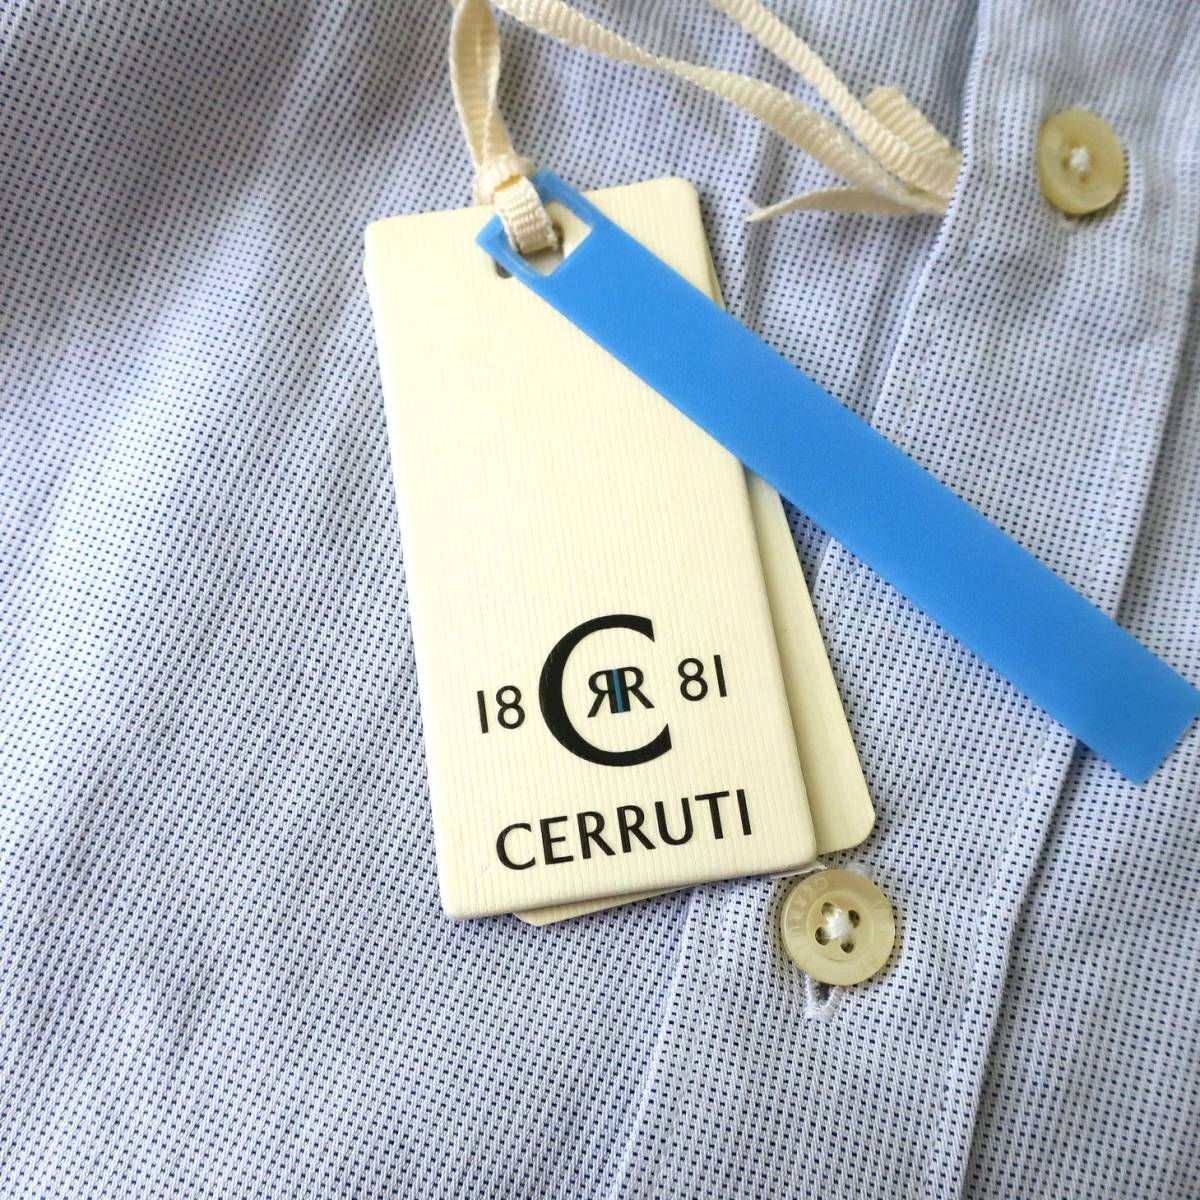 新品 未使用 CERRUTI 1881 セルッティ 高級 メンズ ドレスシャツ スリム ソフト 長袖シャツ ボタンシャツ イタリア 青 ブルー Lサイズ